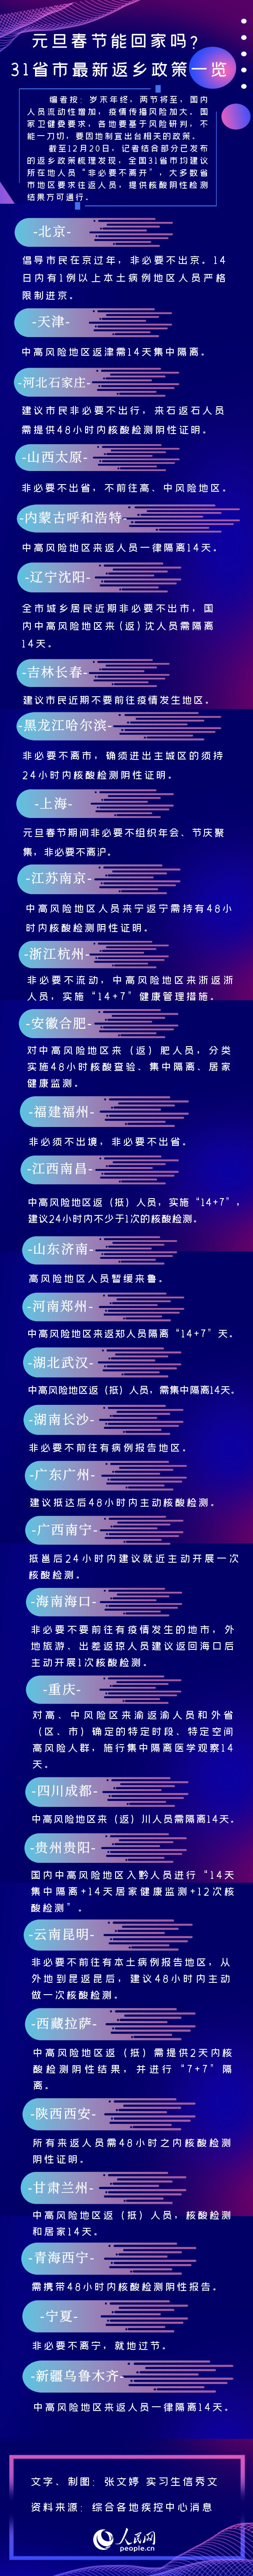 吴谢宇案二审庭前会议延期，原定于本月17日召开_1stekBet_百度热点快讯